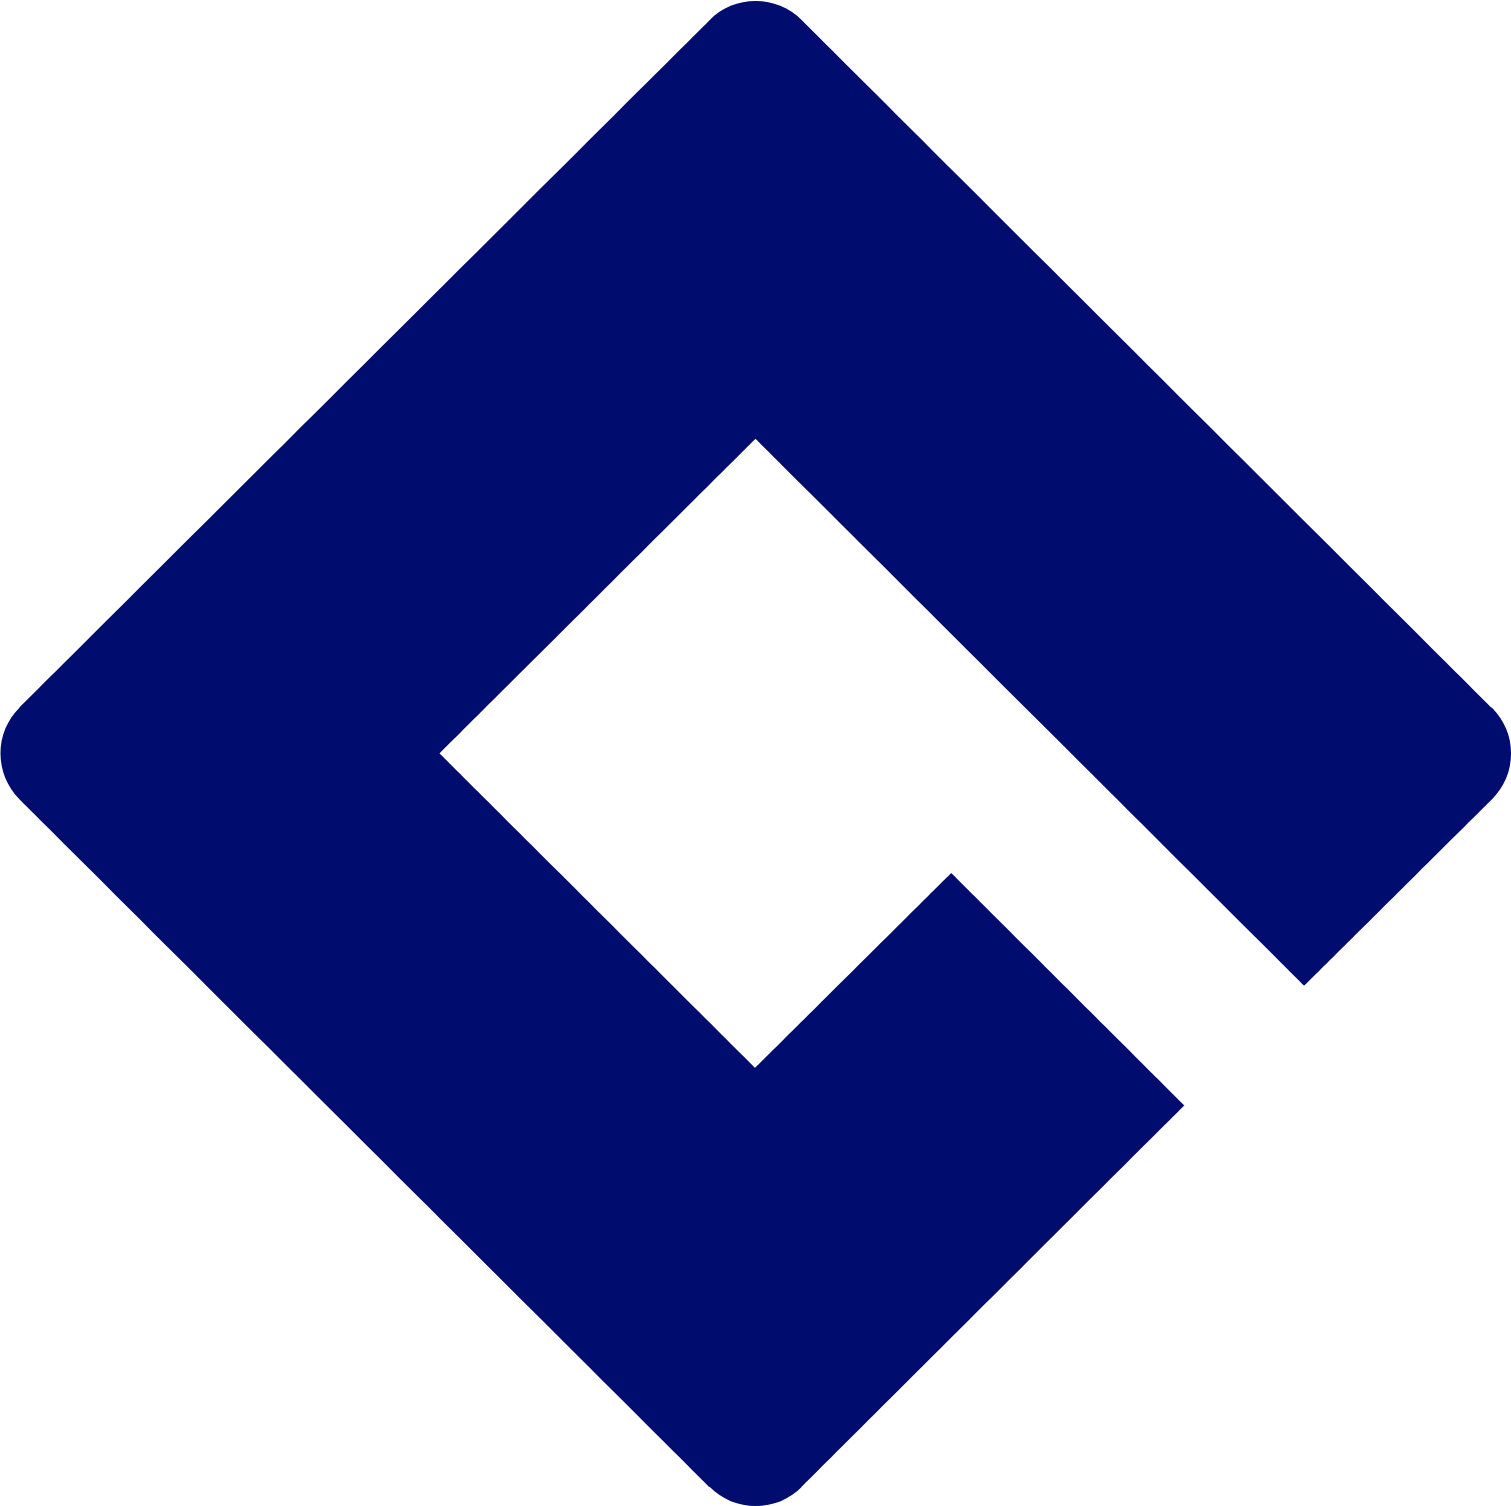 Bâloise logo (transparent PNG)